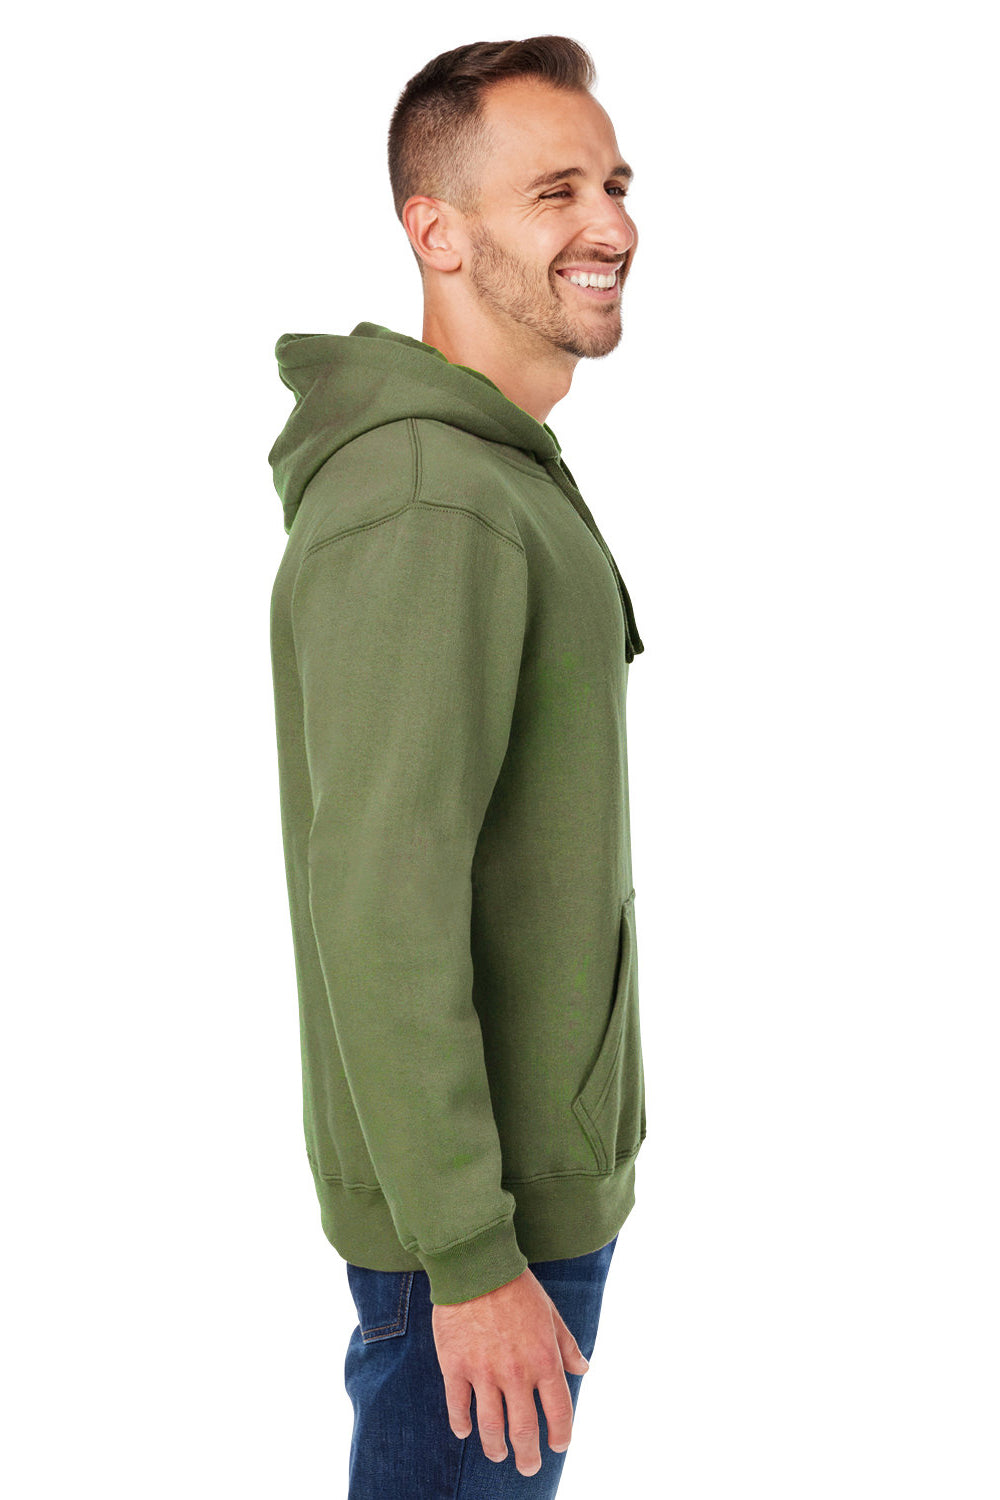 J America JA8824/8824 Mens Premium Fleece Hooded Sweatshirt Hoodie Military Green SIde